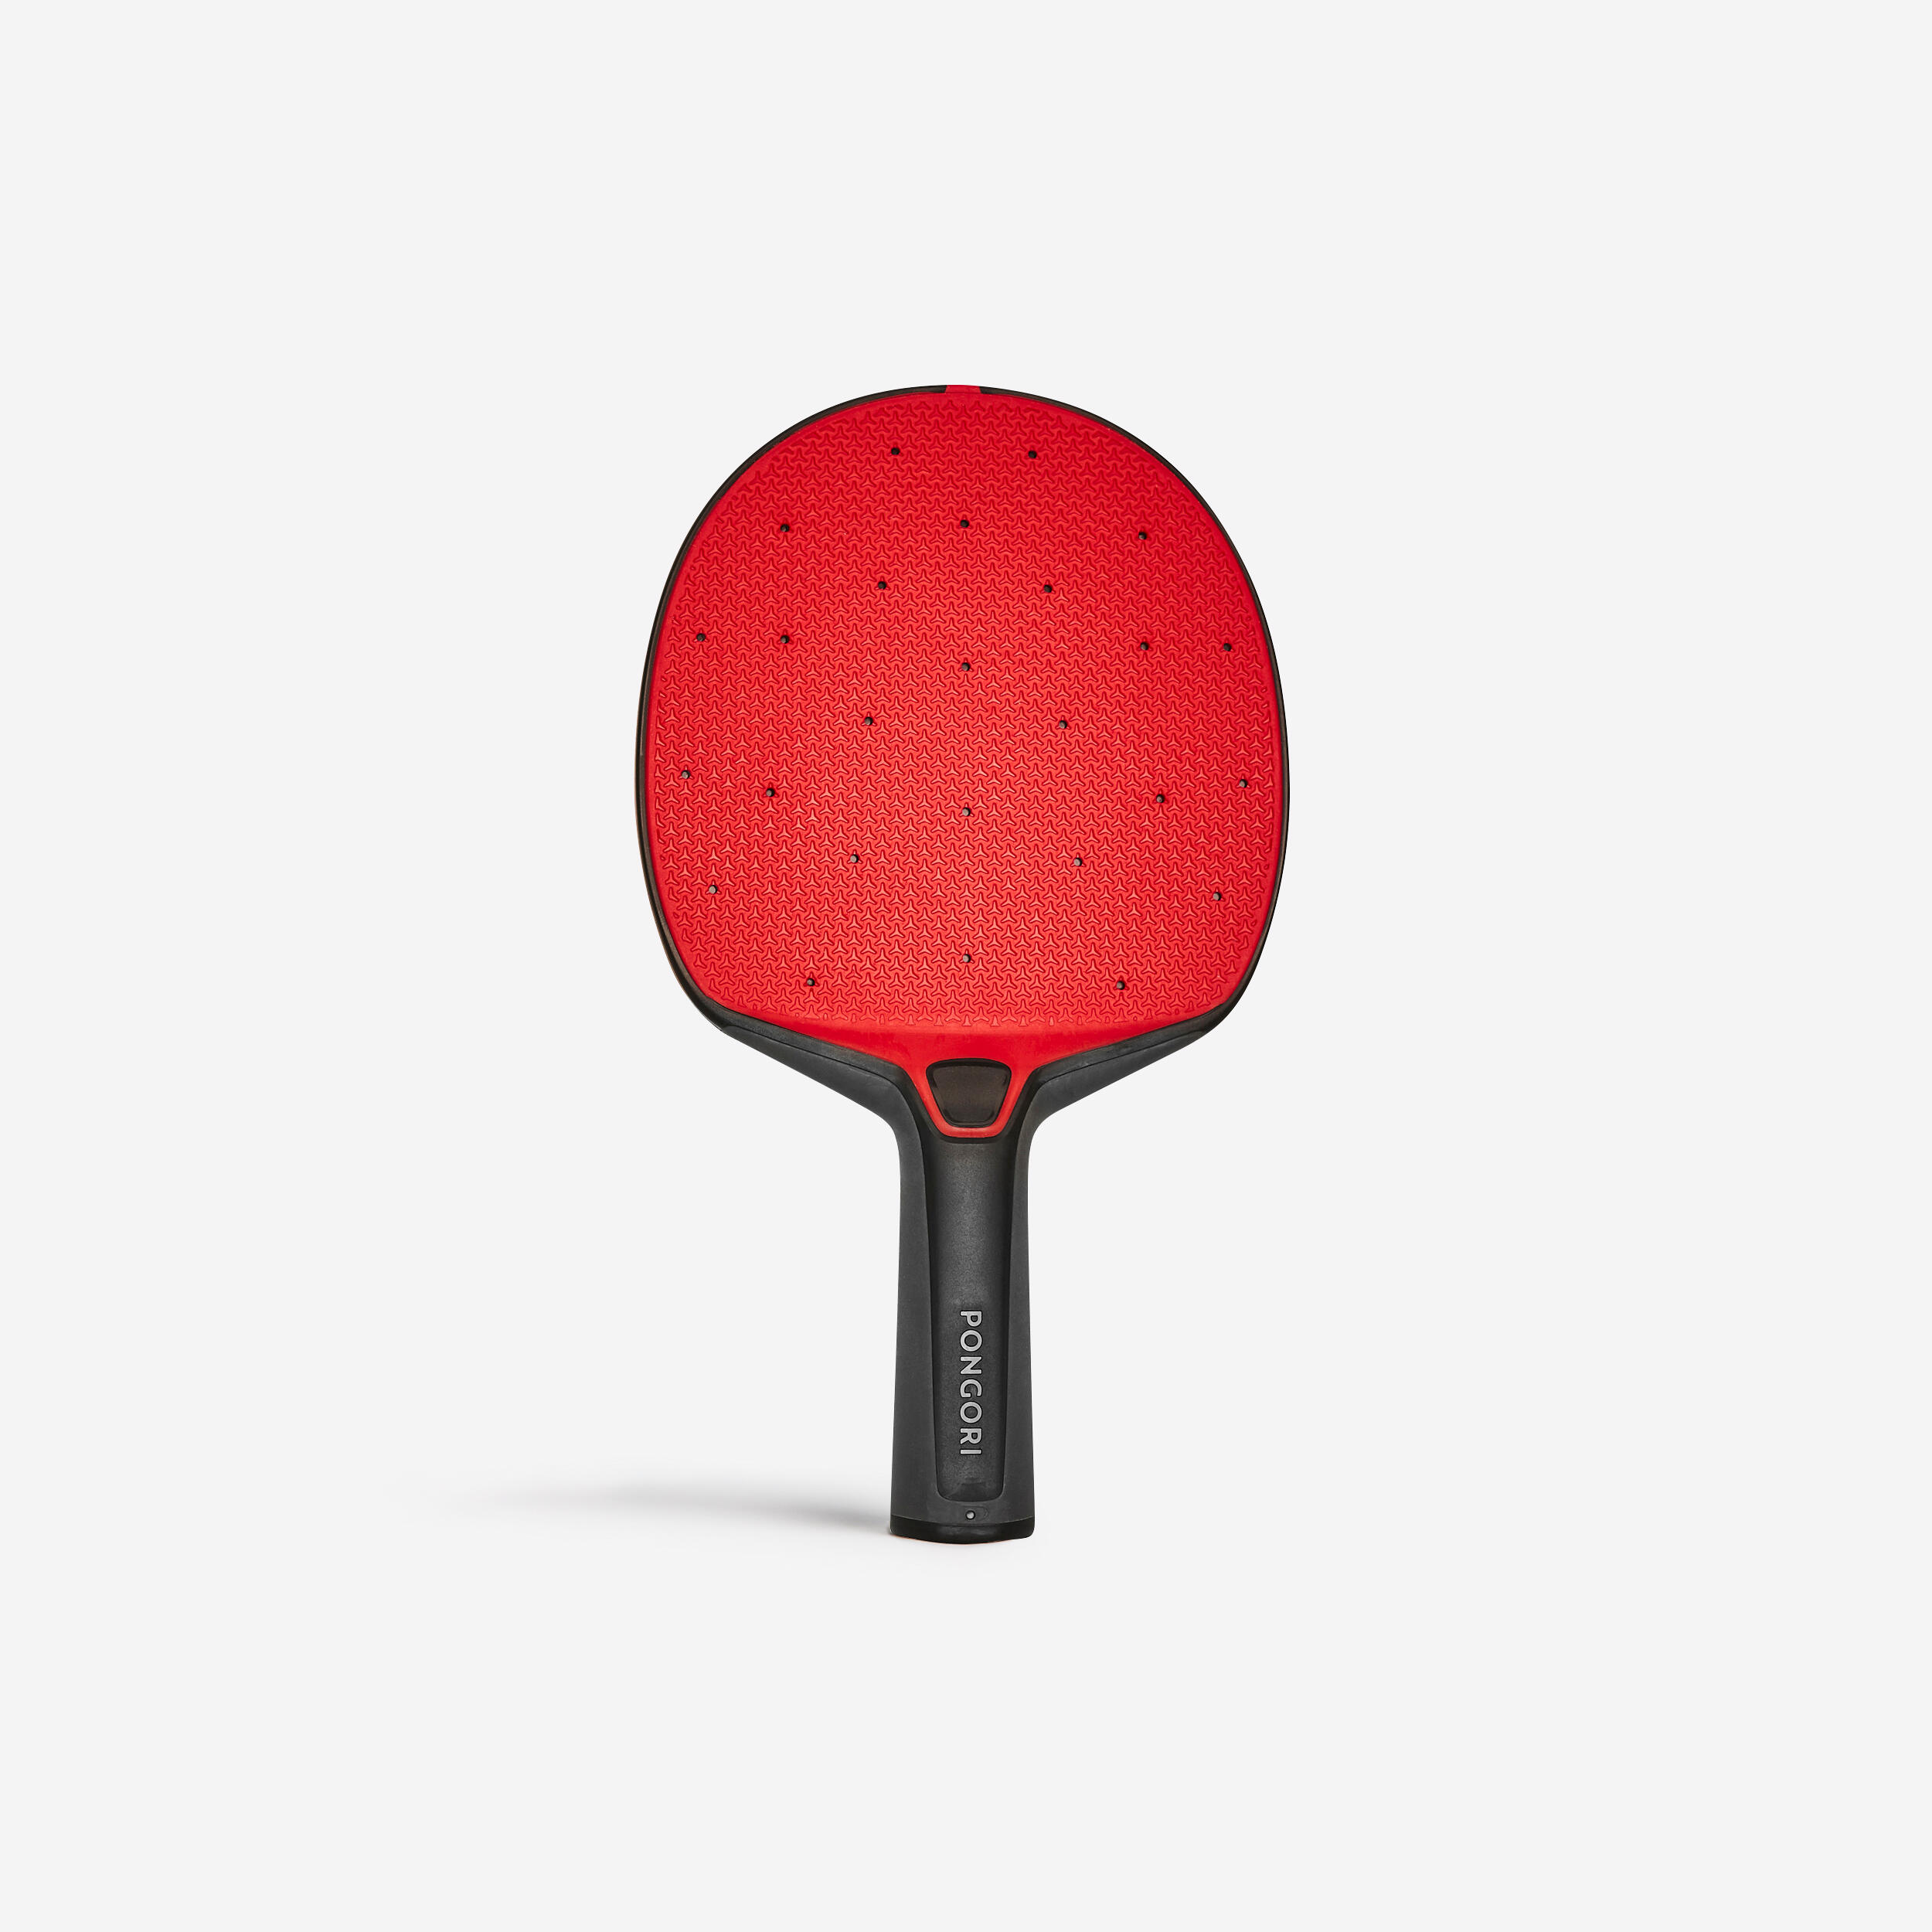 Paletă Rezistentă Tenis de Masă PPR130 Negru-Roșu decathlon.ro imagine 2022